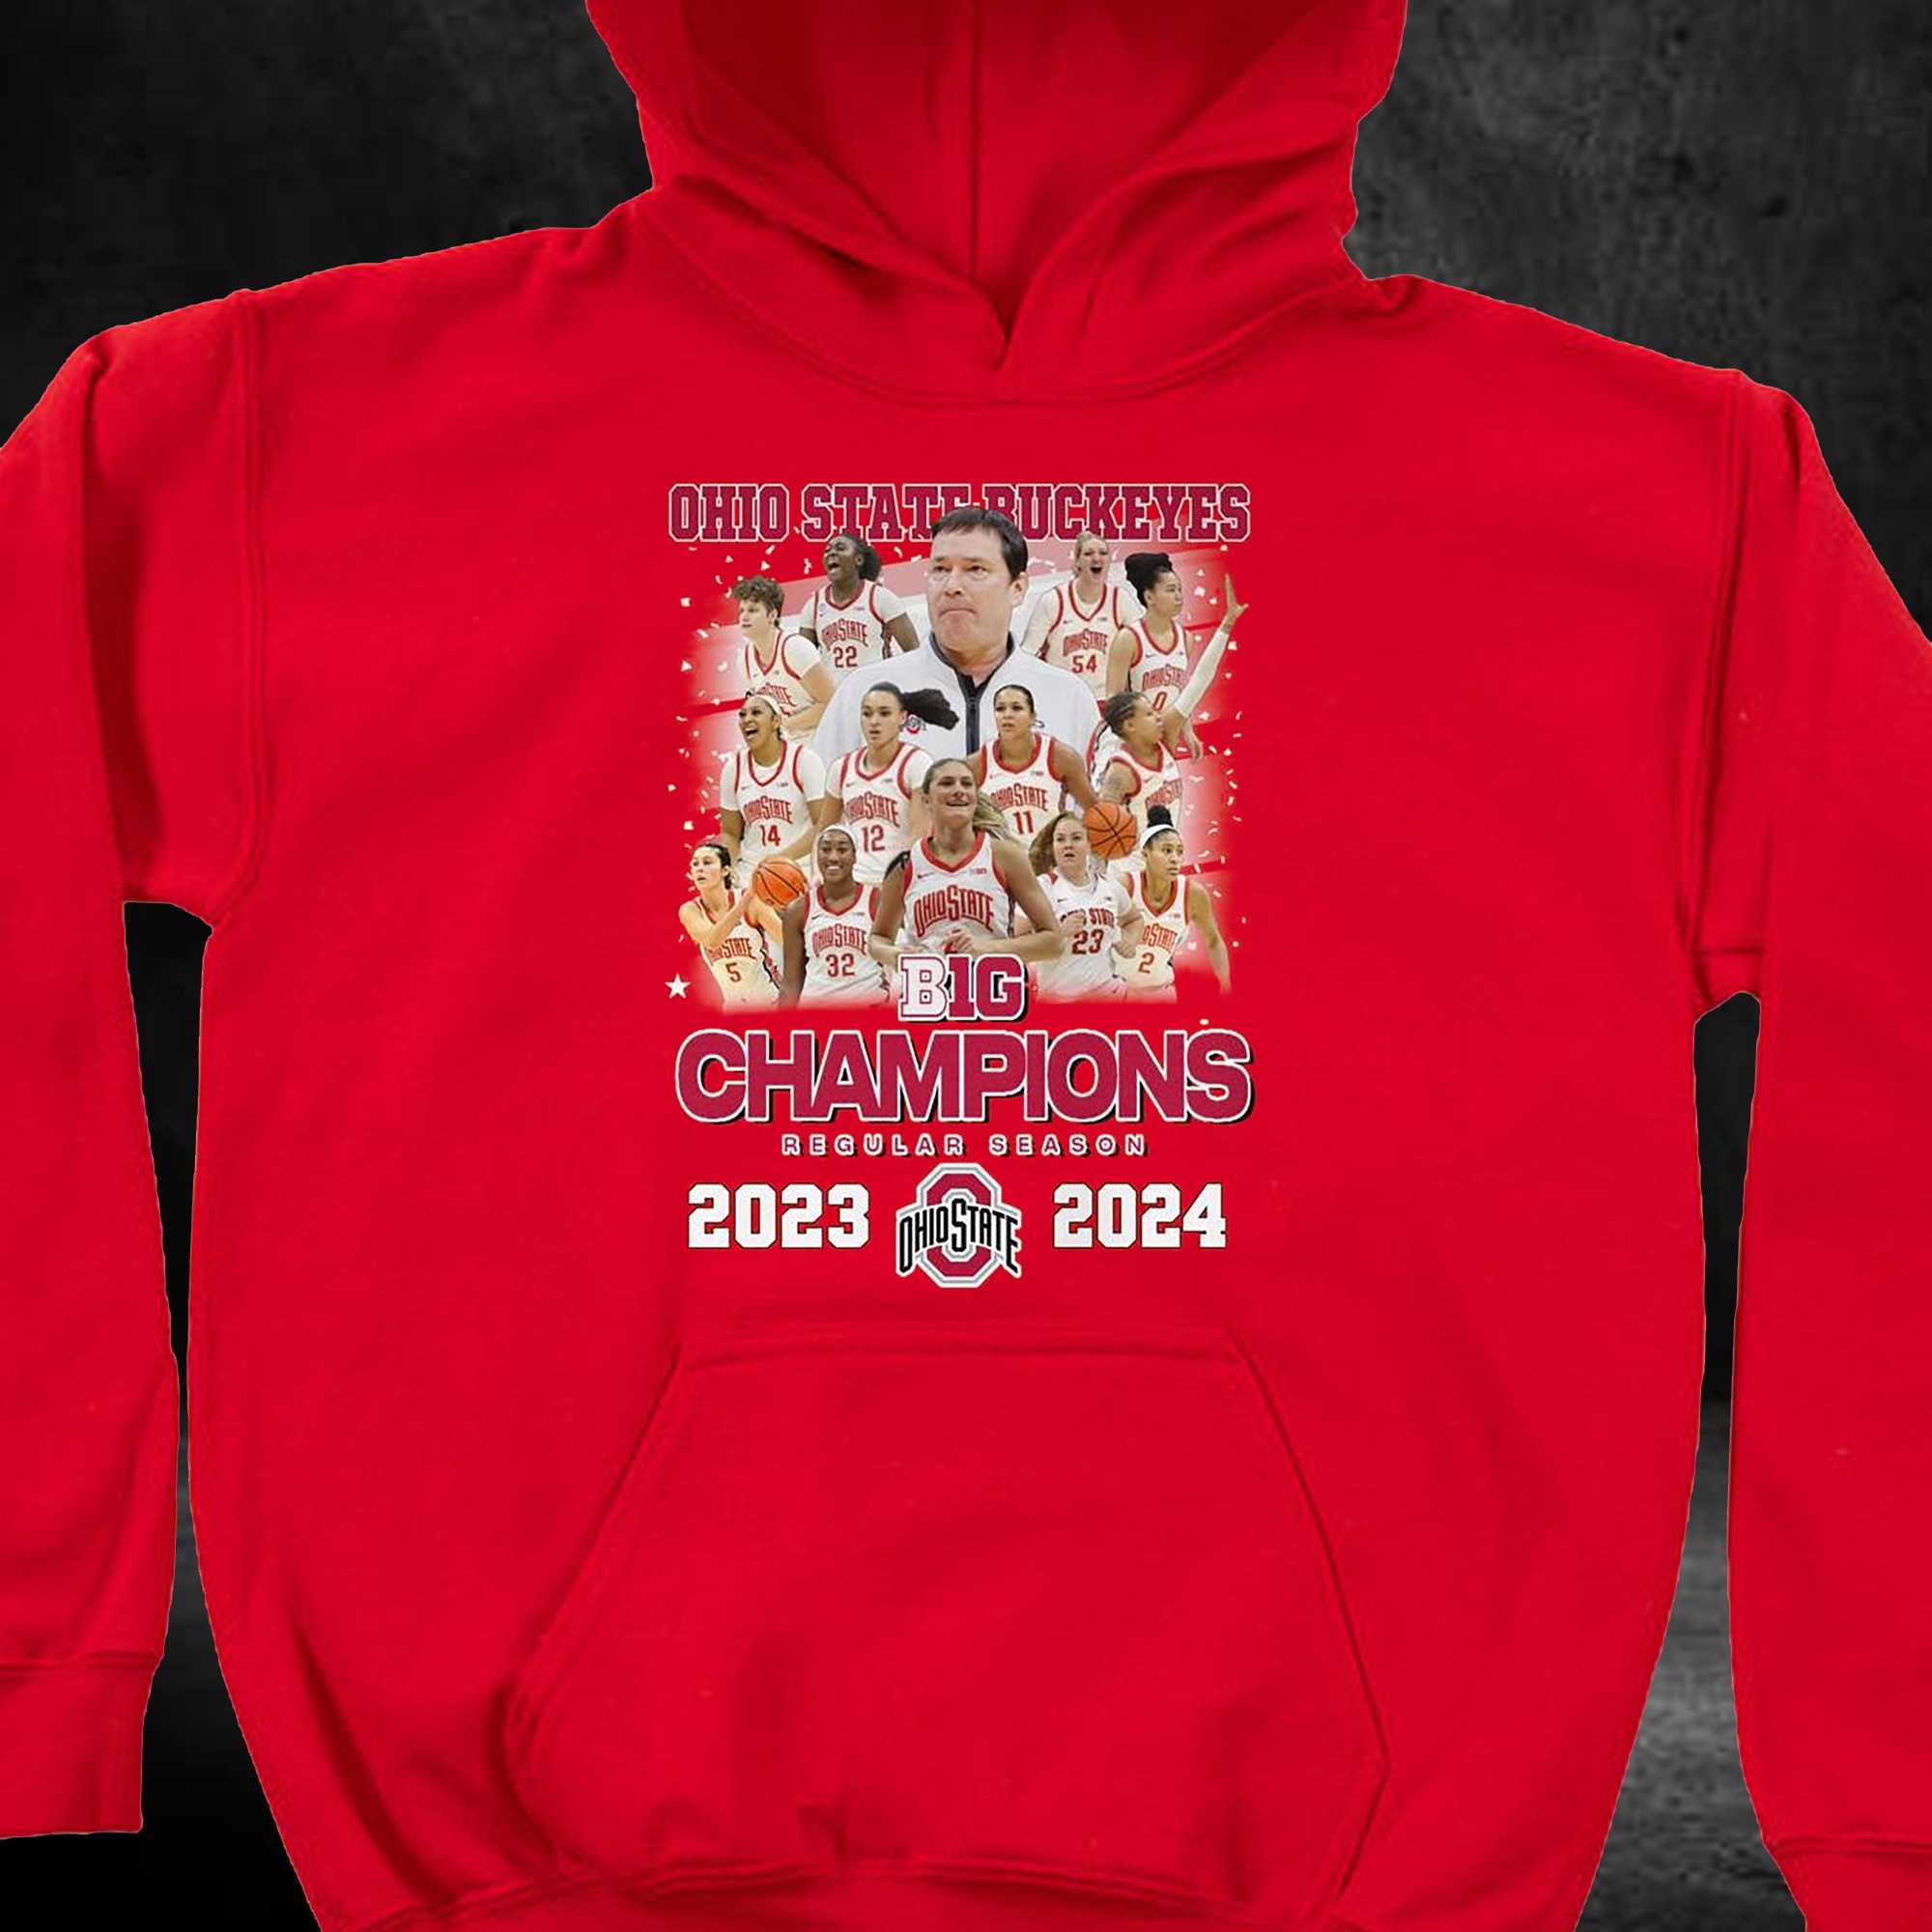 Ohio State Buckeyes B1g Champions Regular Season 2023-2024 T-shirt 